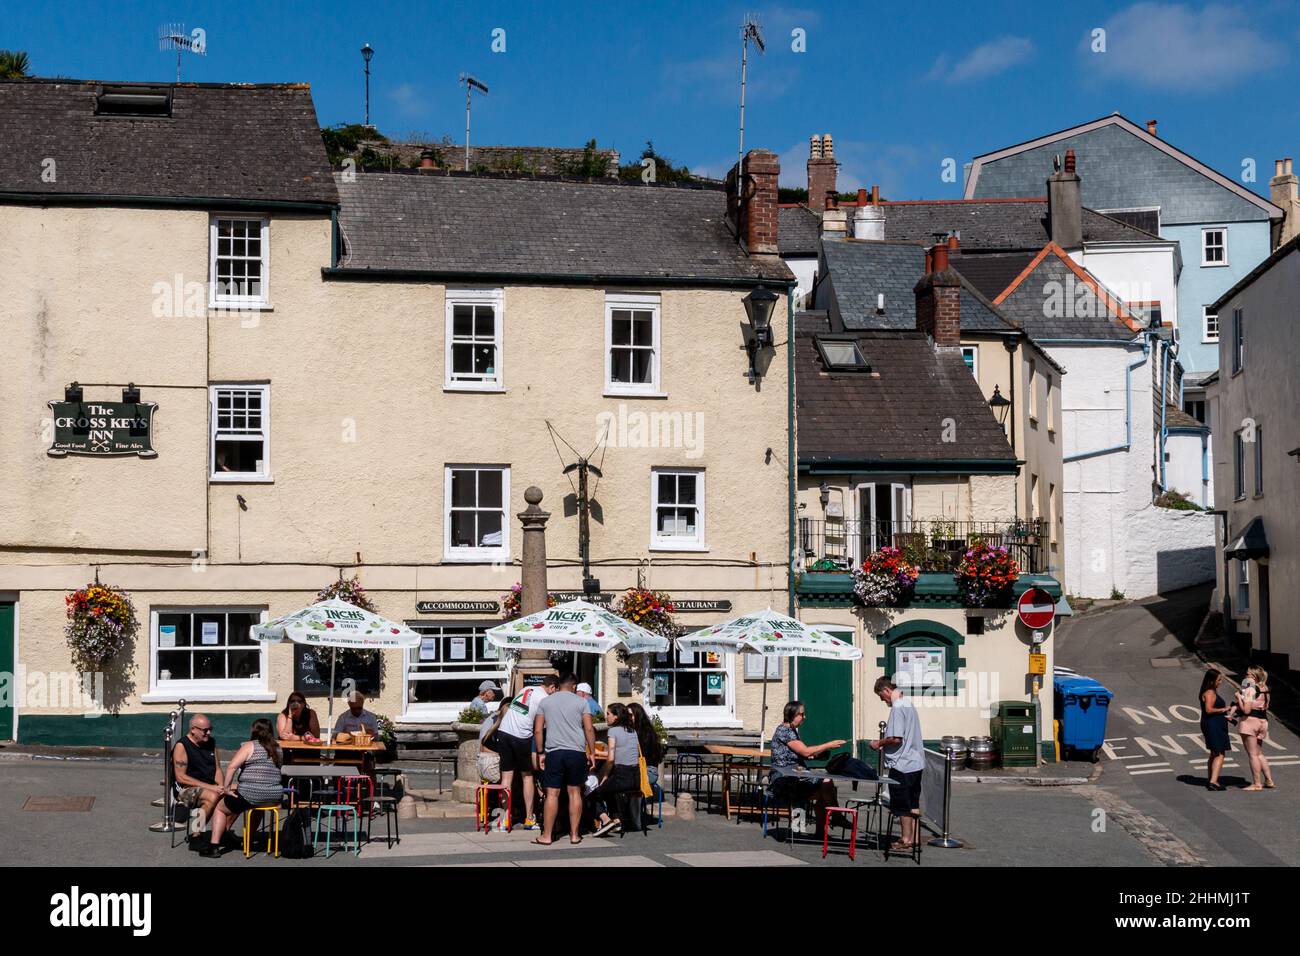 Leute, die sich vor dem Cross Key Inn in The Square, Cawsand, Cornwall treffen. Während der Covid-Pandemie war es beliebt, außerhalb von Pubs vorübergehend zu sitzen. Stockfoto